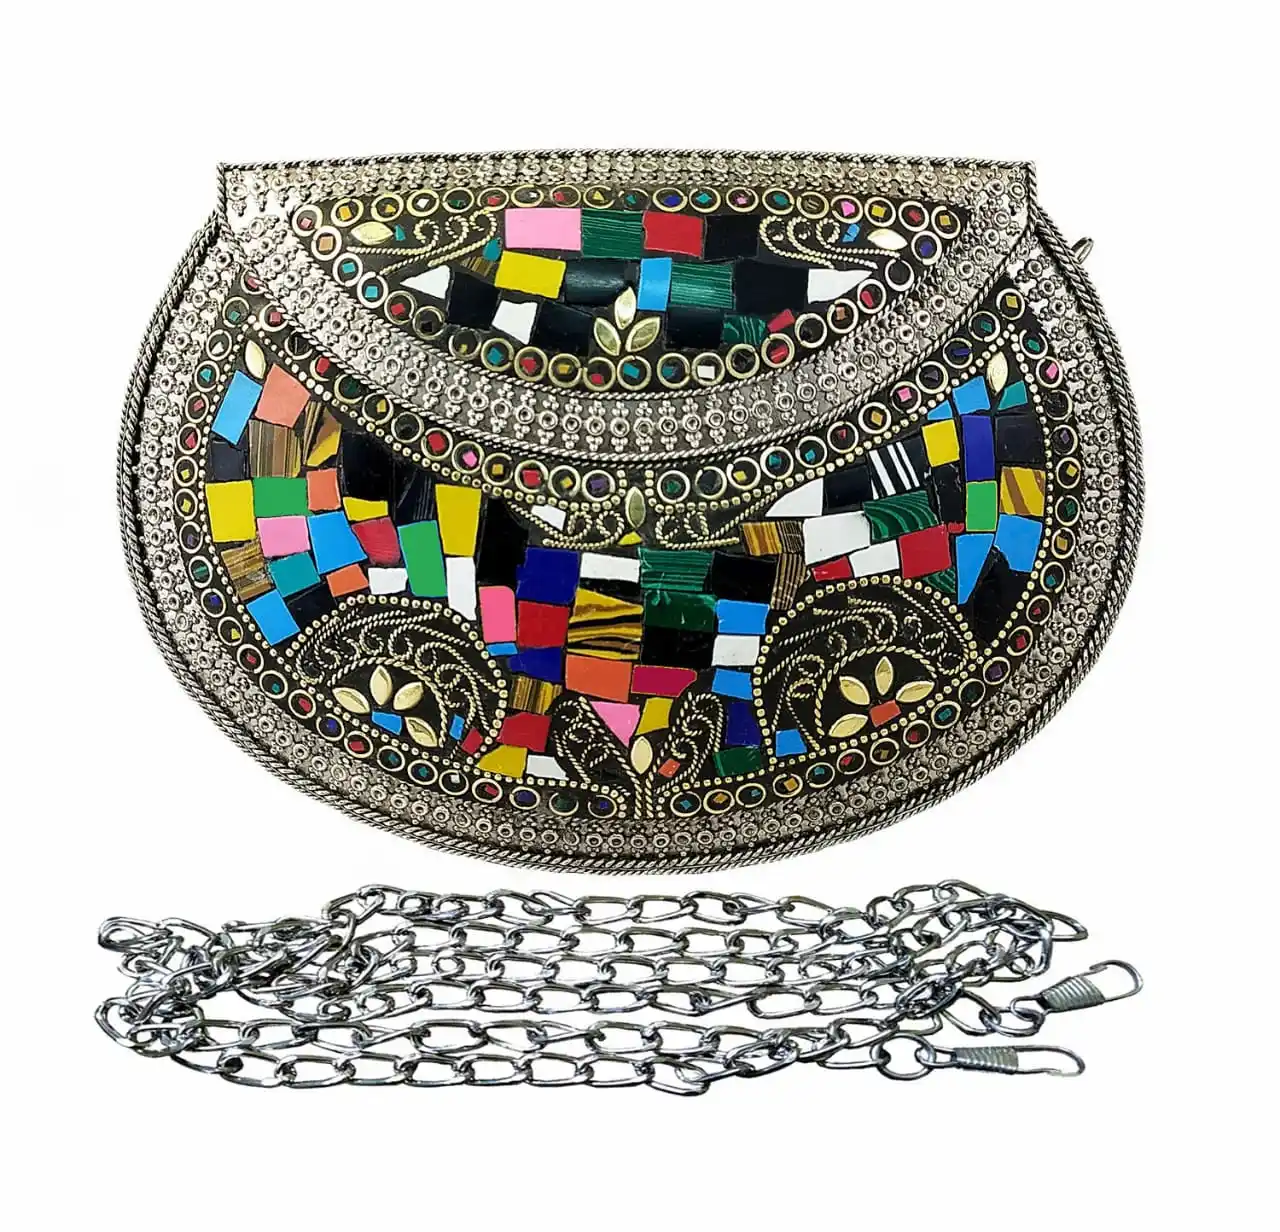 Высококачественный недорогой металлический клатч ручной работы с мозаичным дизайном для женщин по оптовой цене из Индии